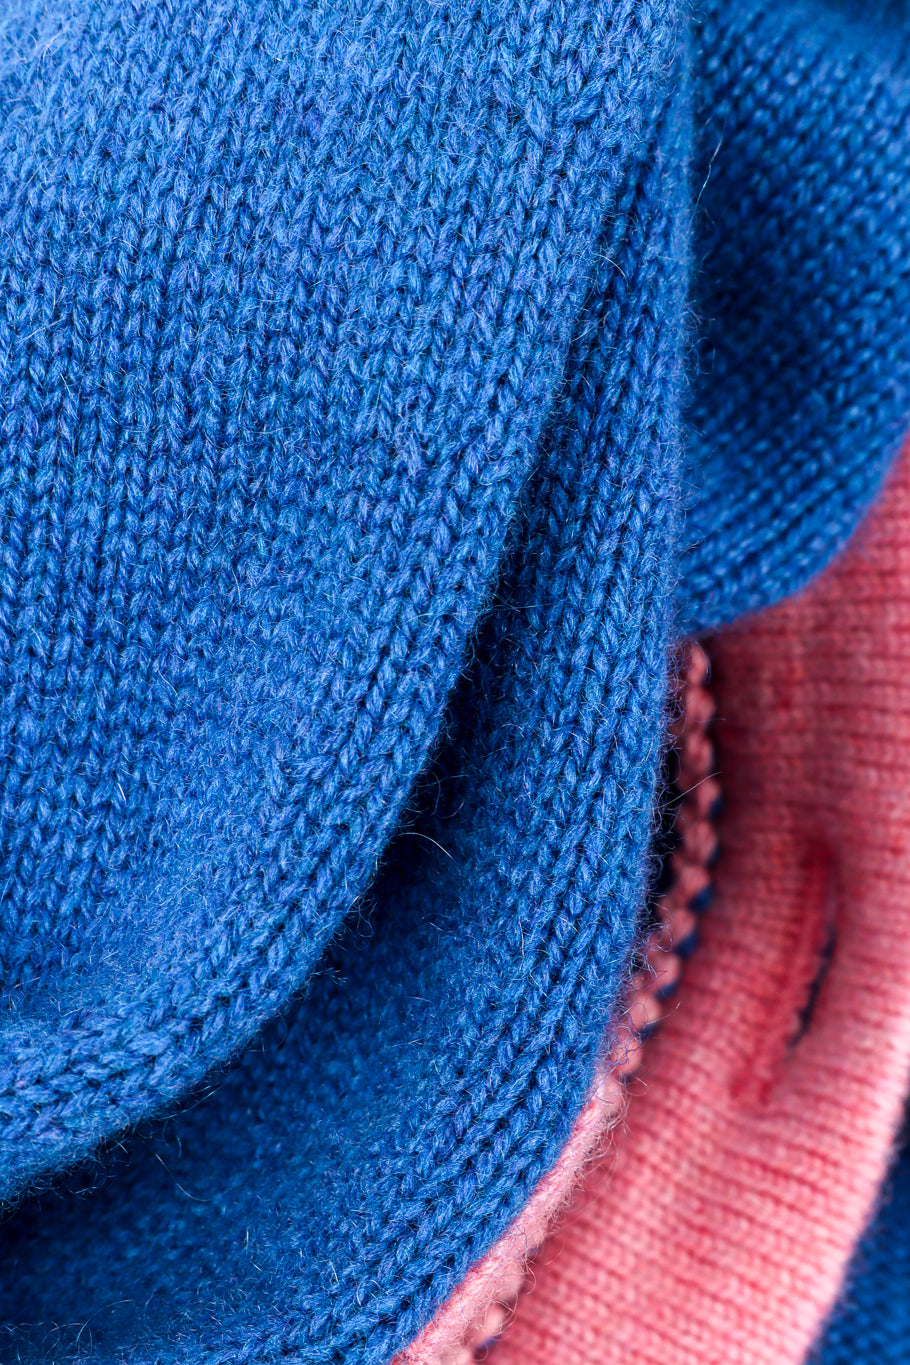 Chanel Cashmere Sweater fabric closeup @recess la